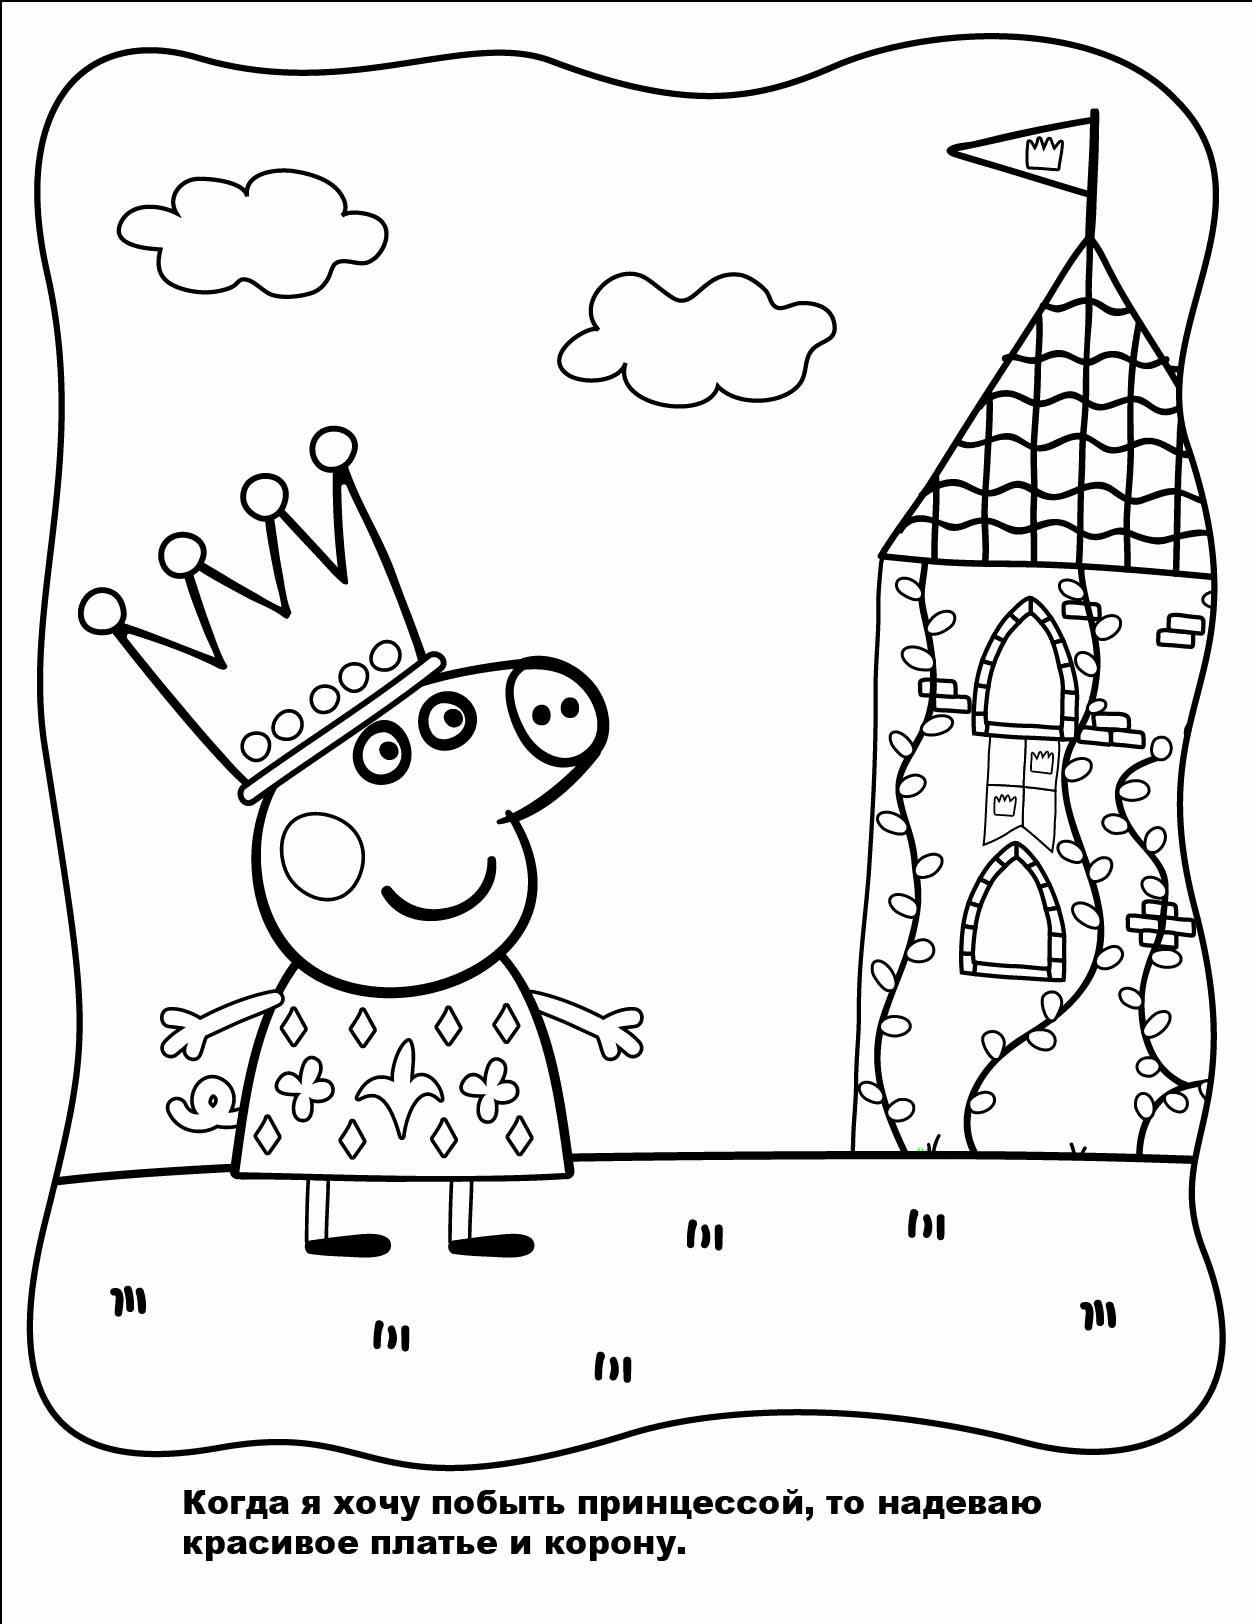 Познавательные и забавные раскраски для детей про свинку Пеппу  Принцесса свинка Пеппа